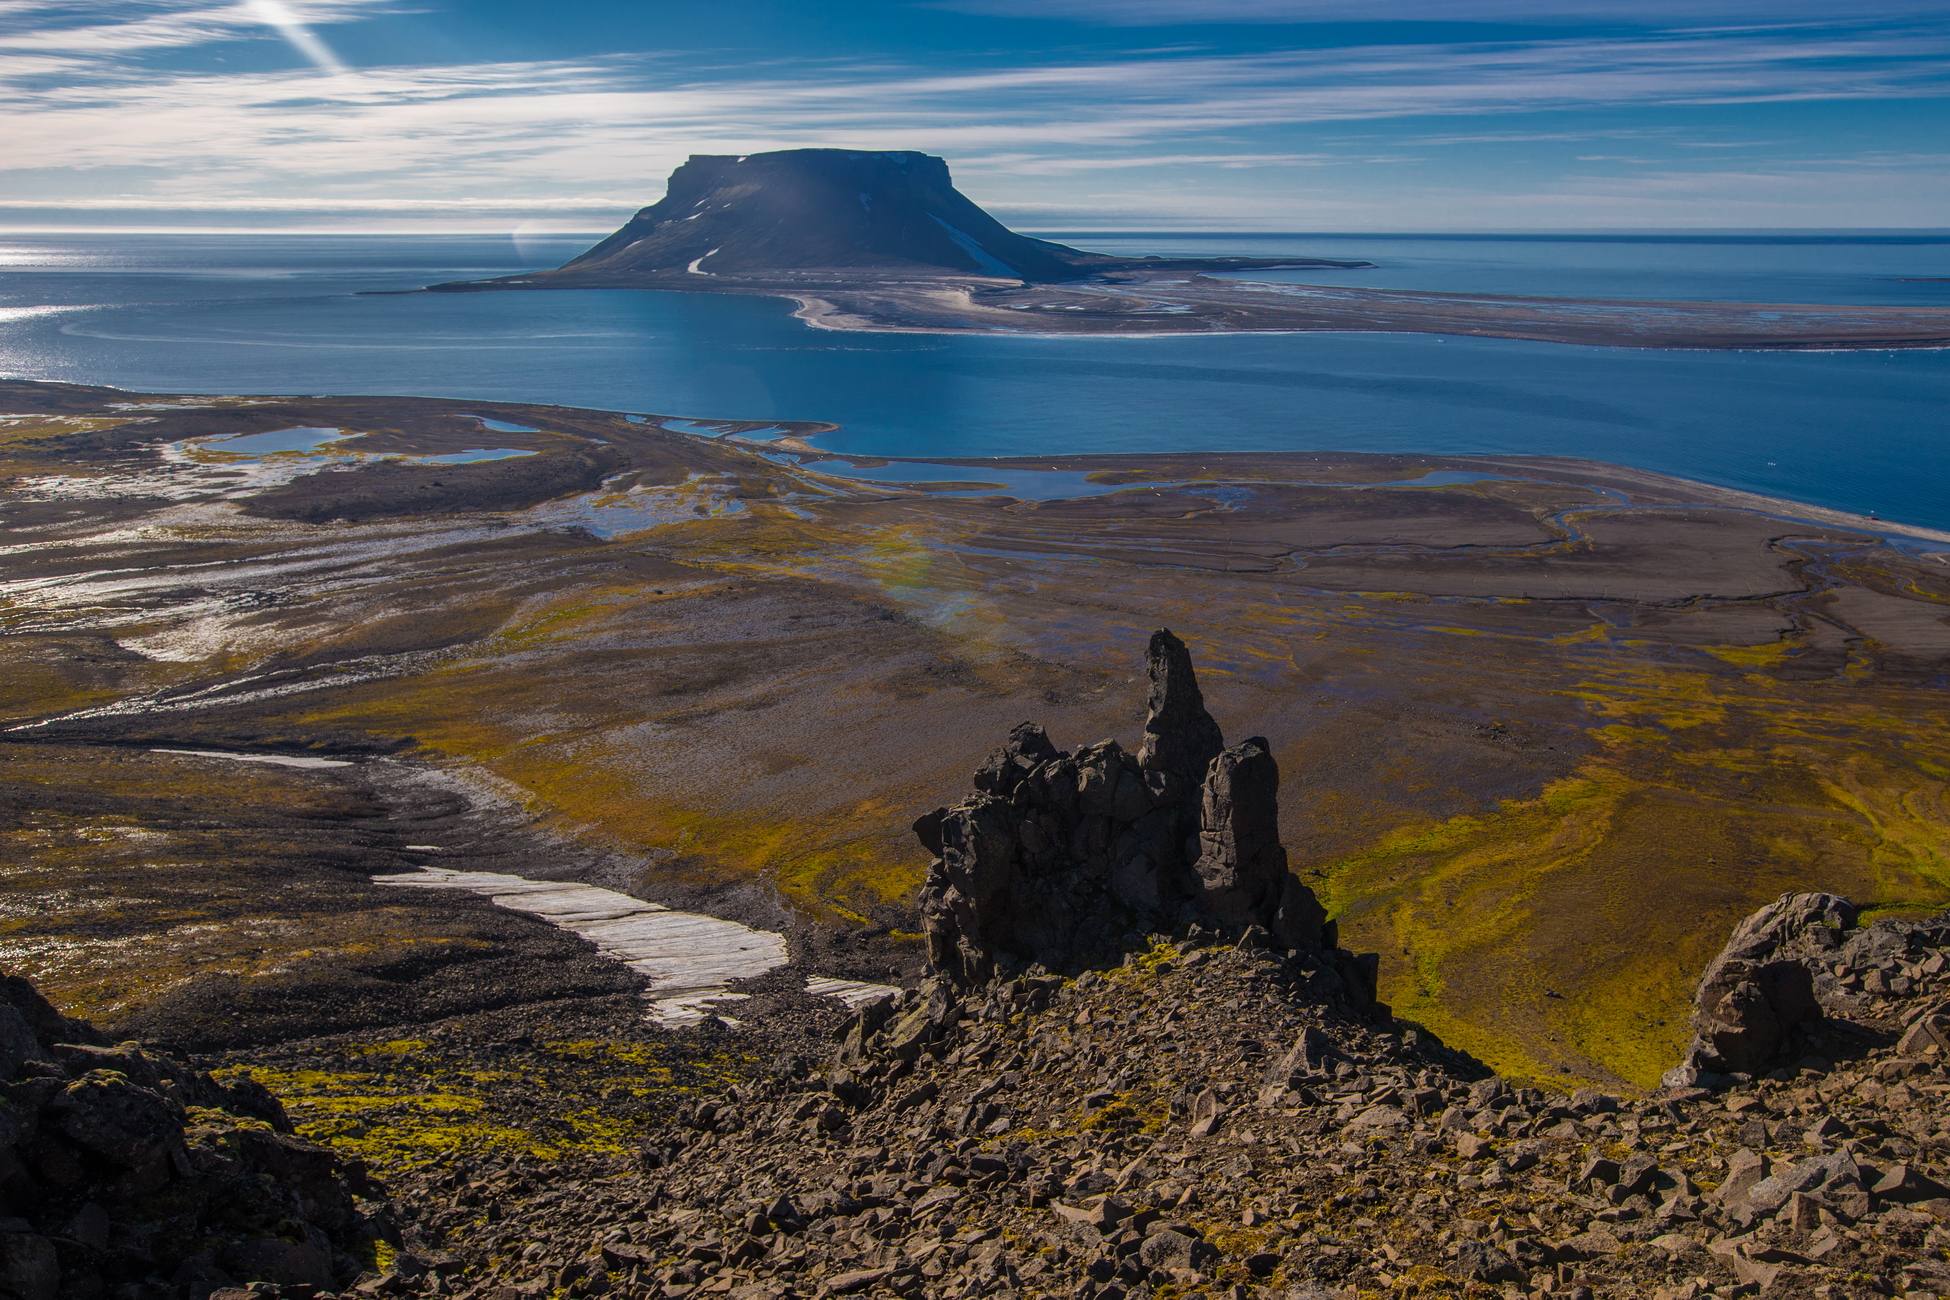 Арктика сегодня. На архипелаге Новая Земля будет развернут испытательный полигон для беспилотных технологий